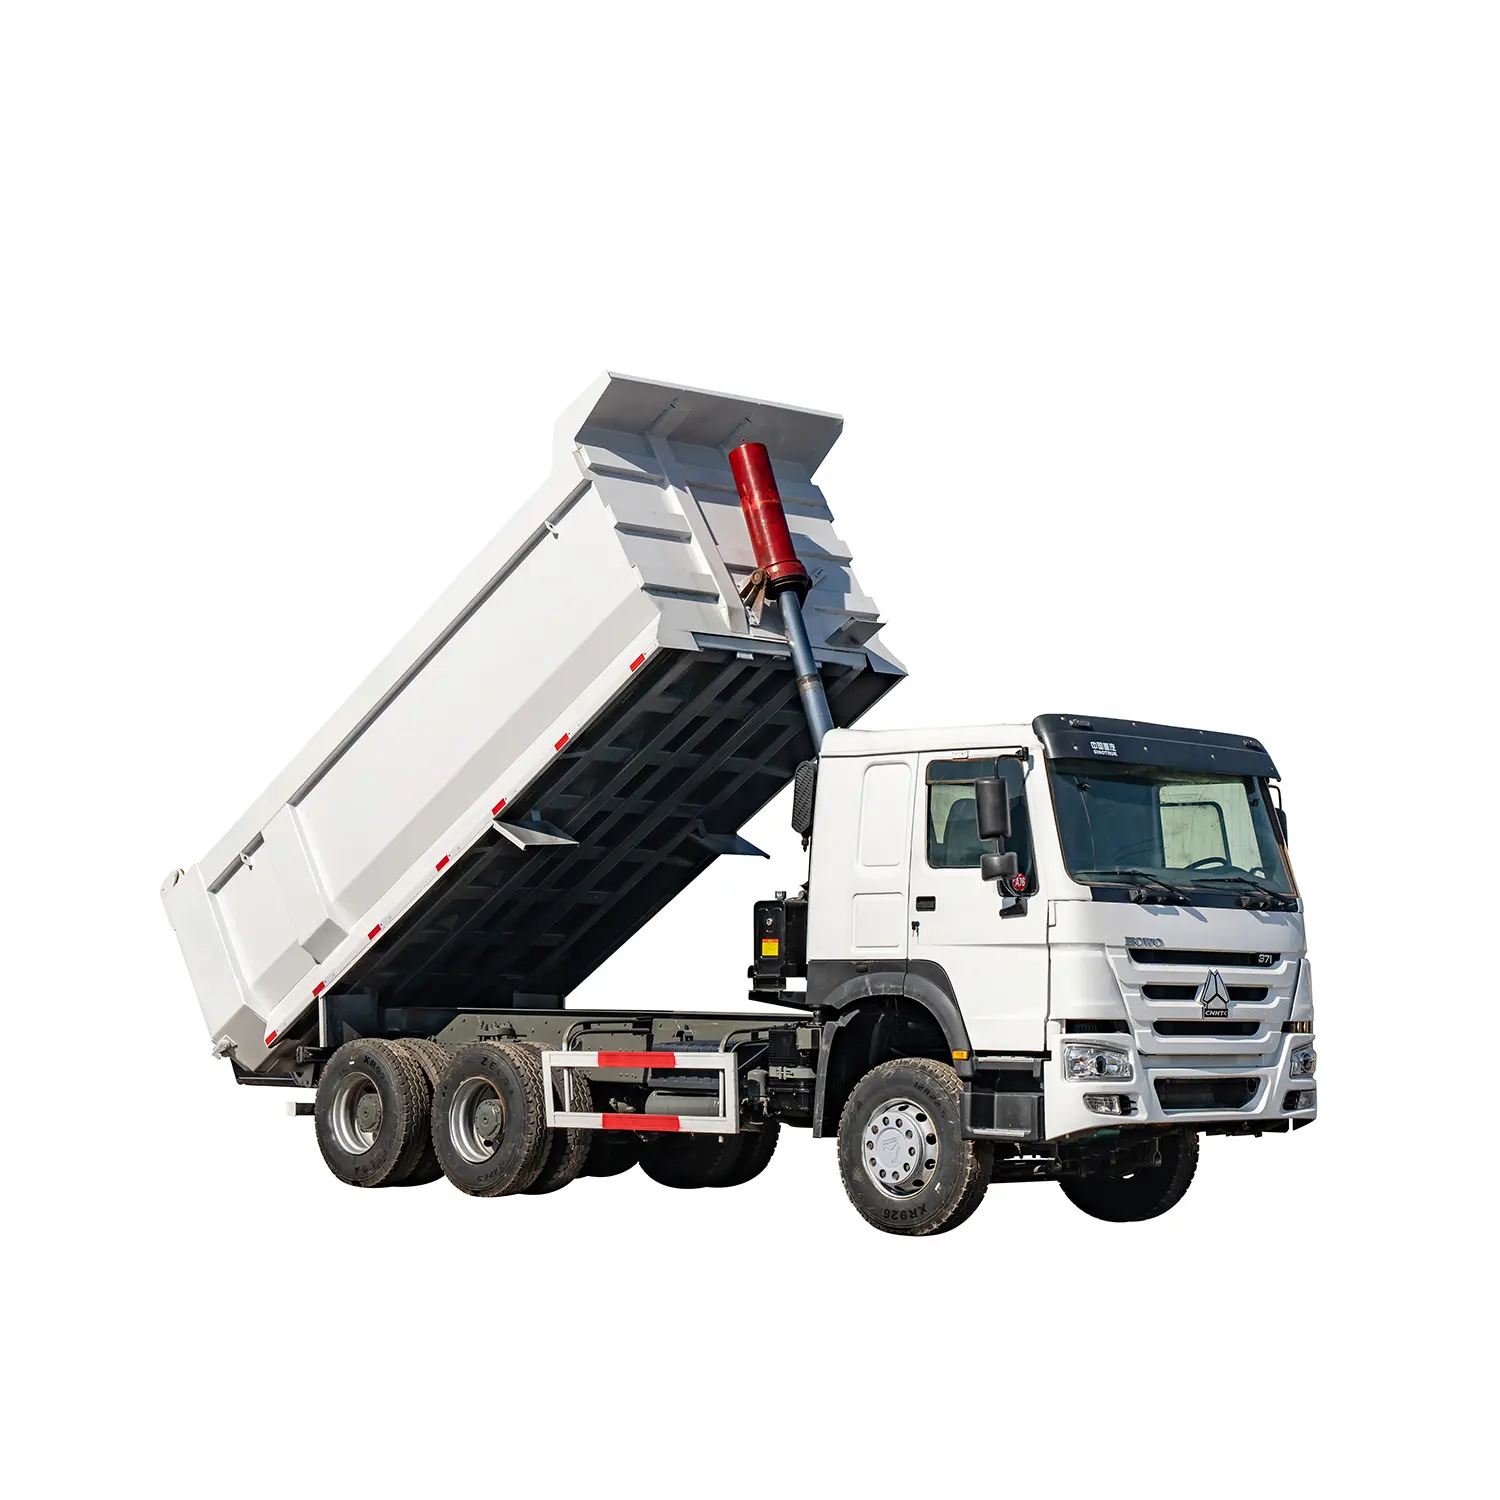 नए यू शेयर कार्गो बॉक्स भारी डम्पर ट्रक का इस्तेमाल होयो 371/375hp डंप ट्रक